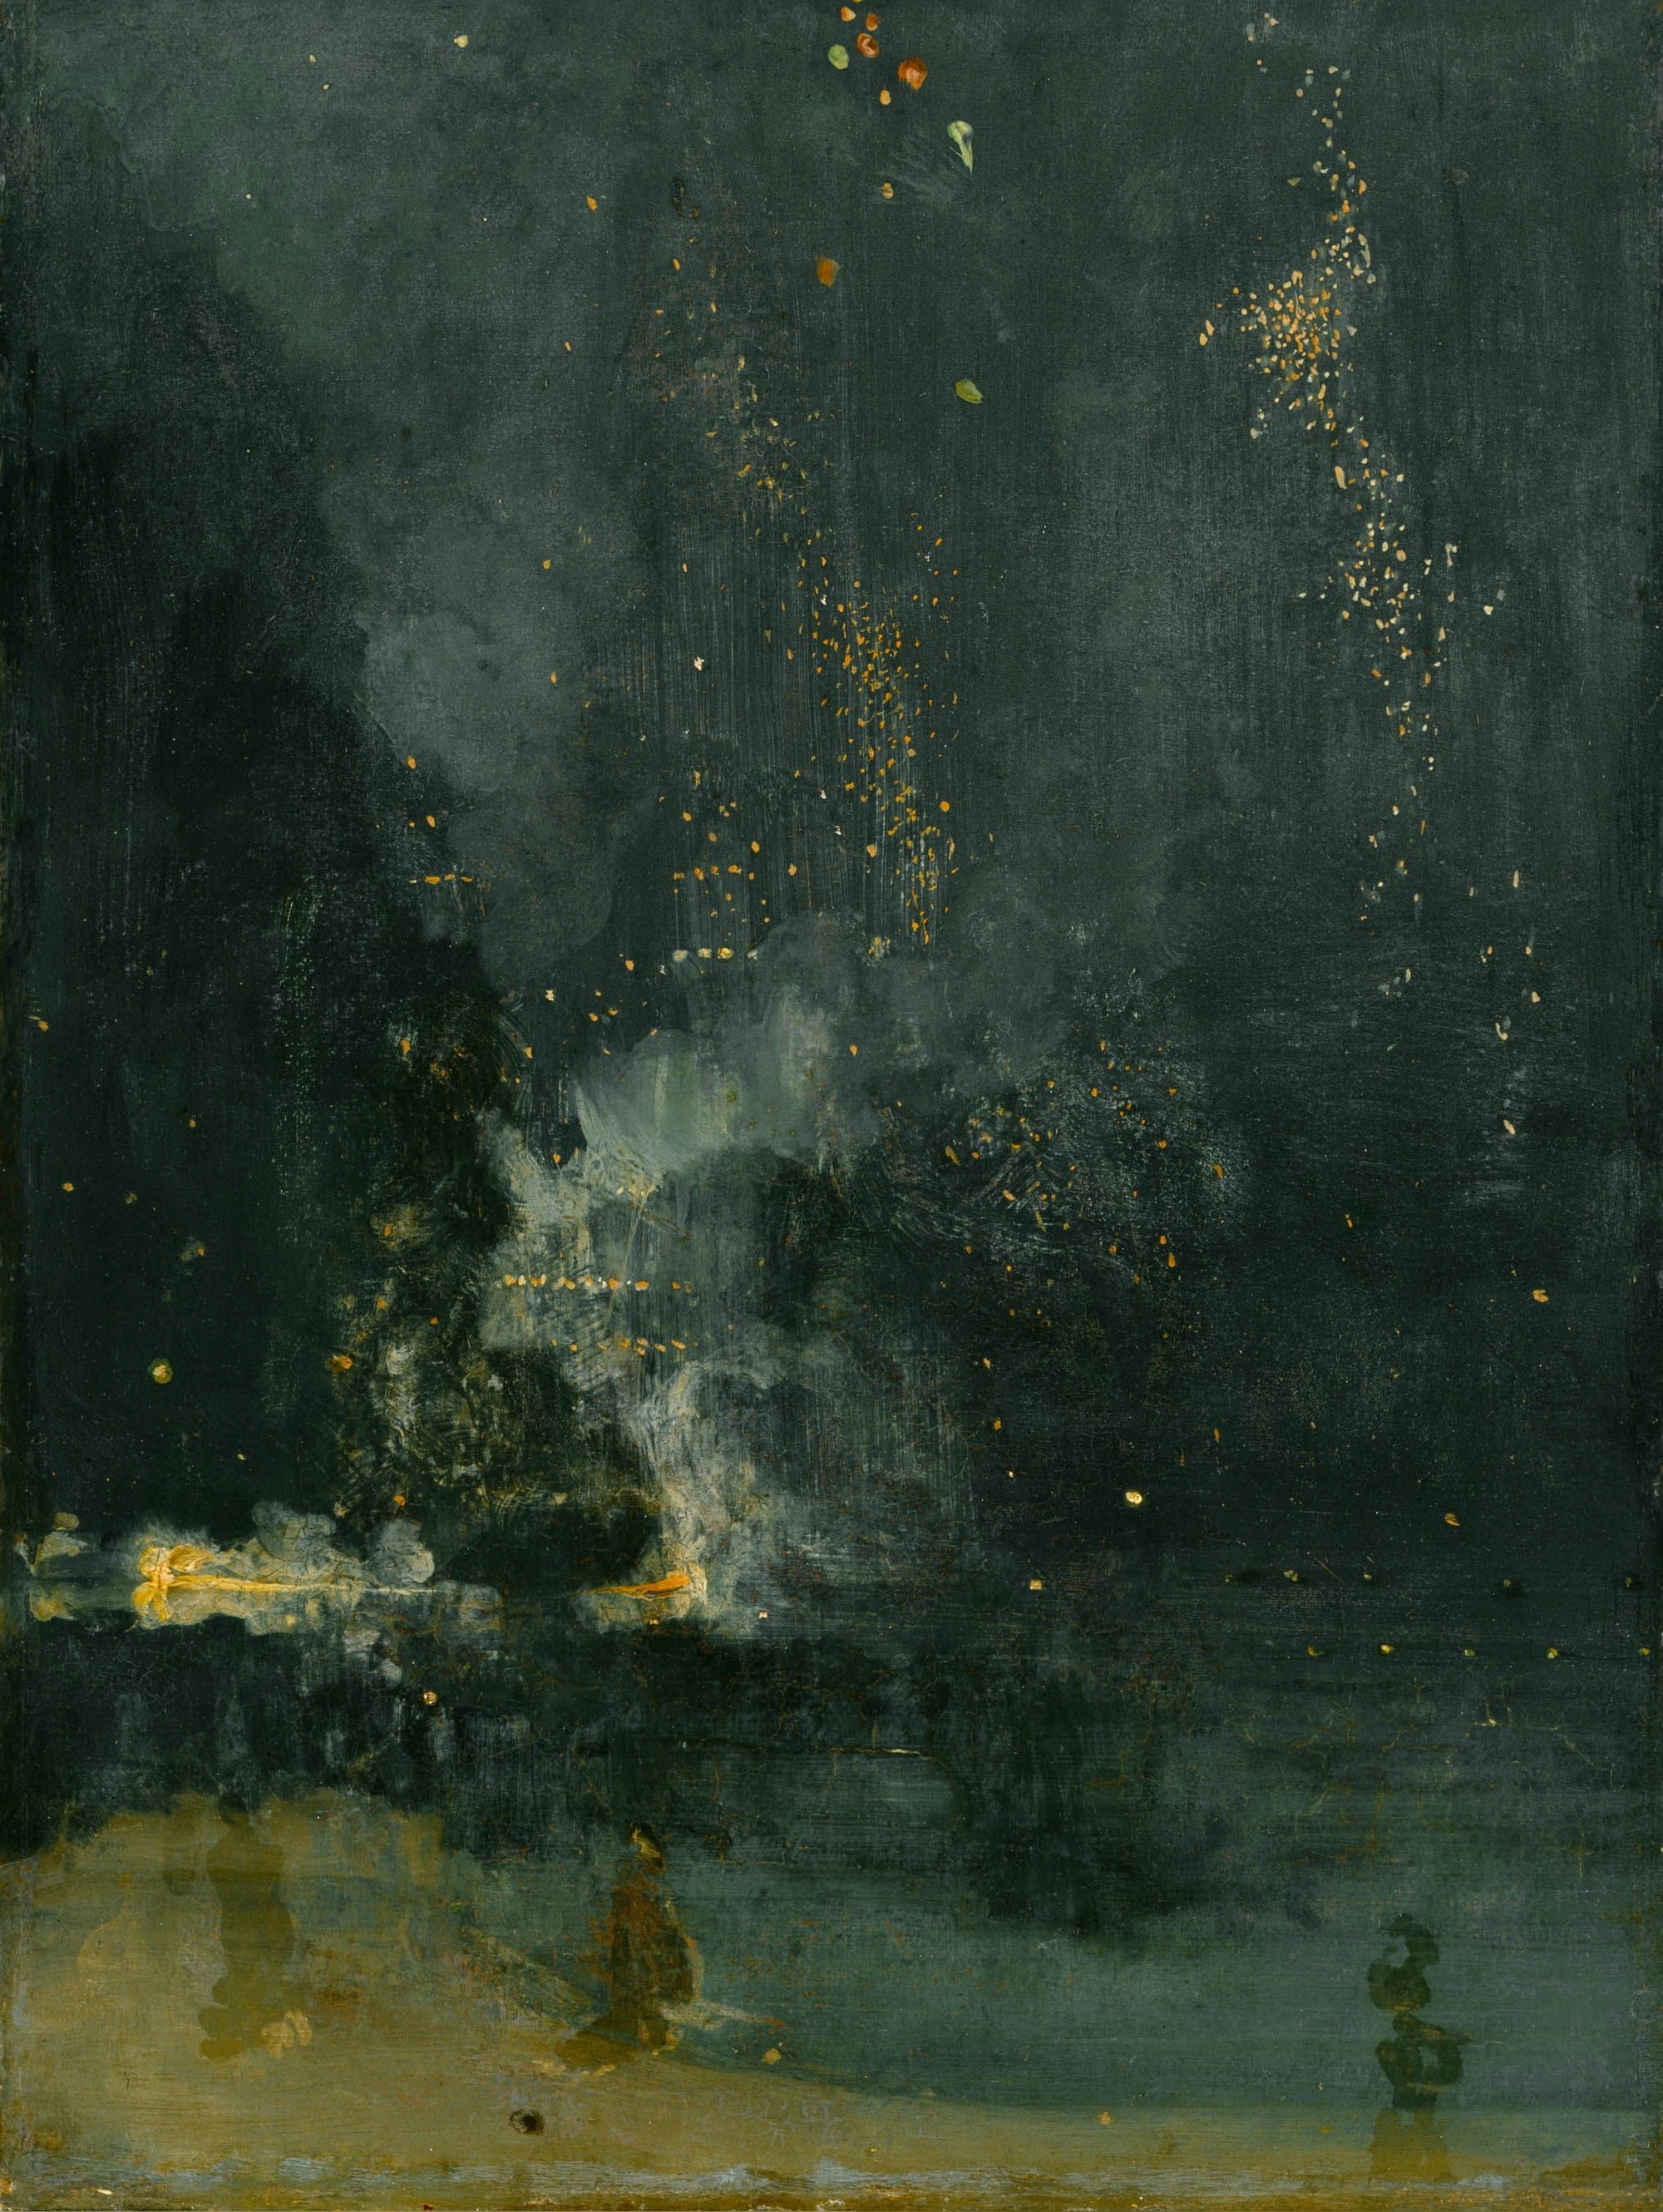 Nocturne en noir et or - La fusée qui tombe - James Abbott McNeill Whistler